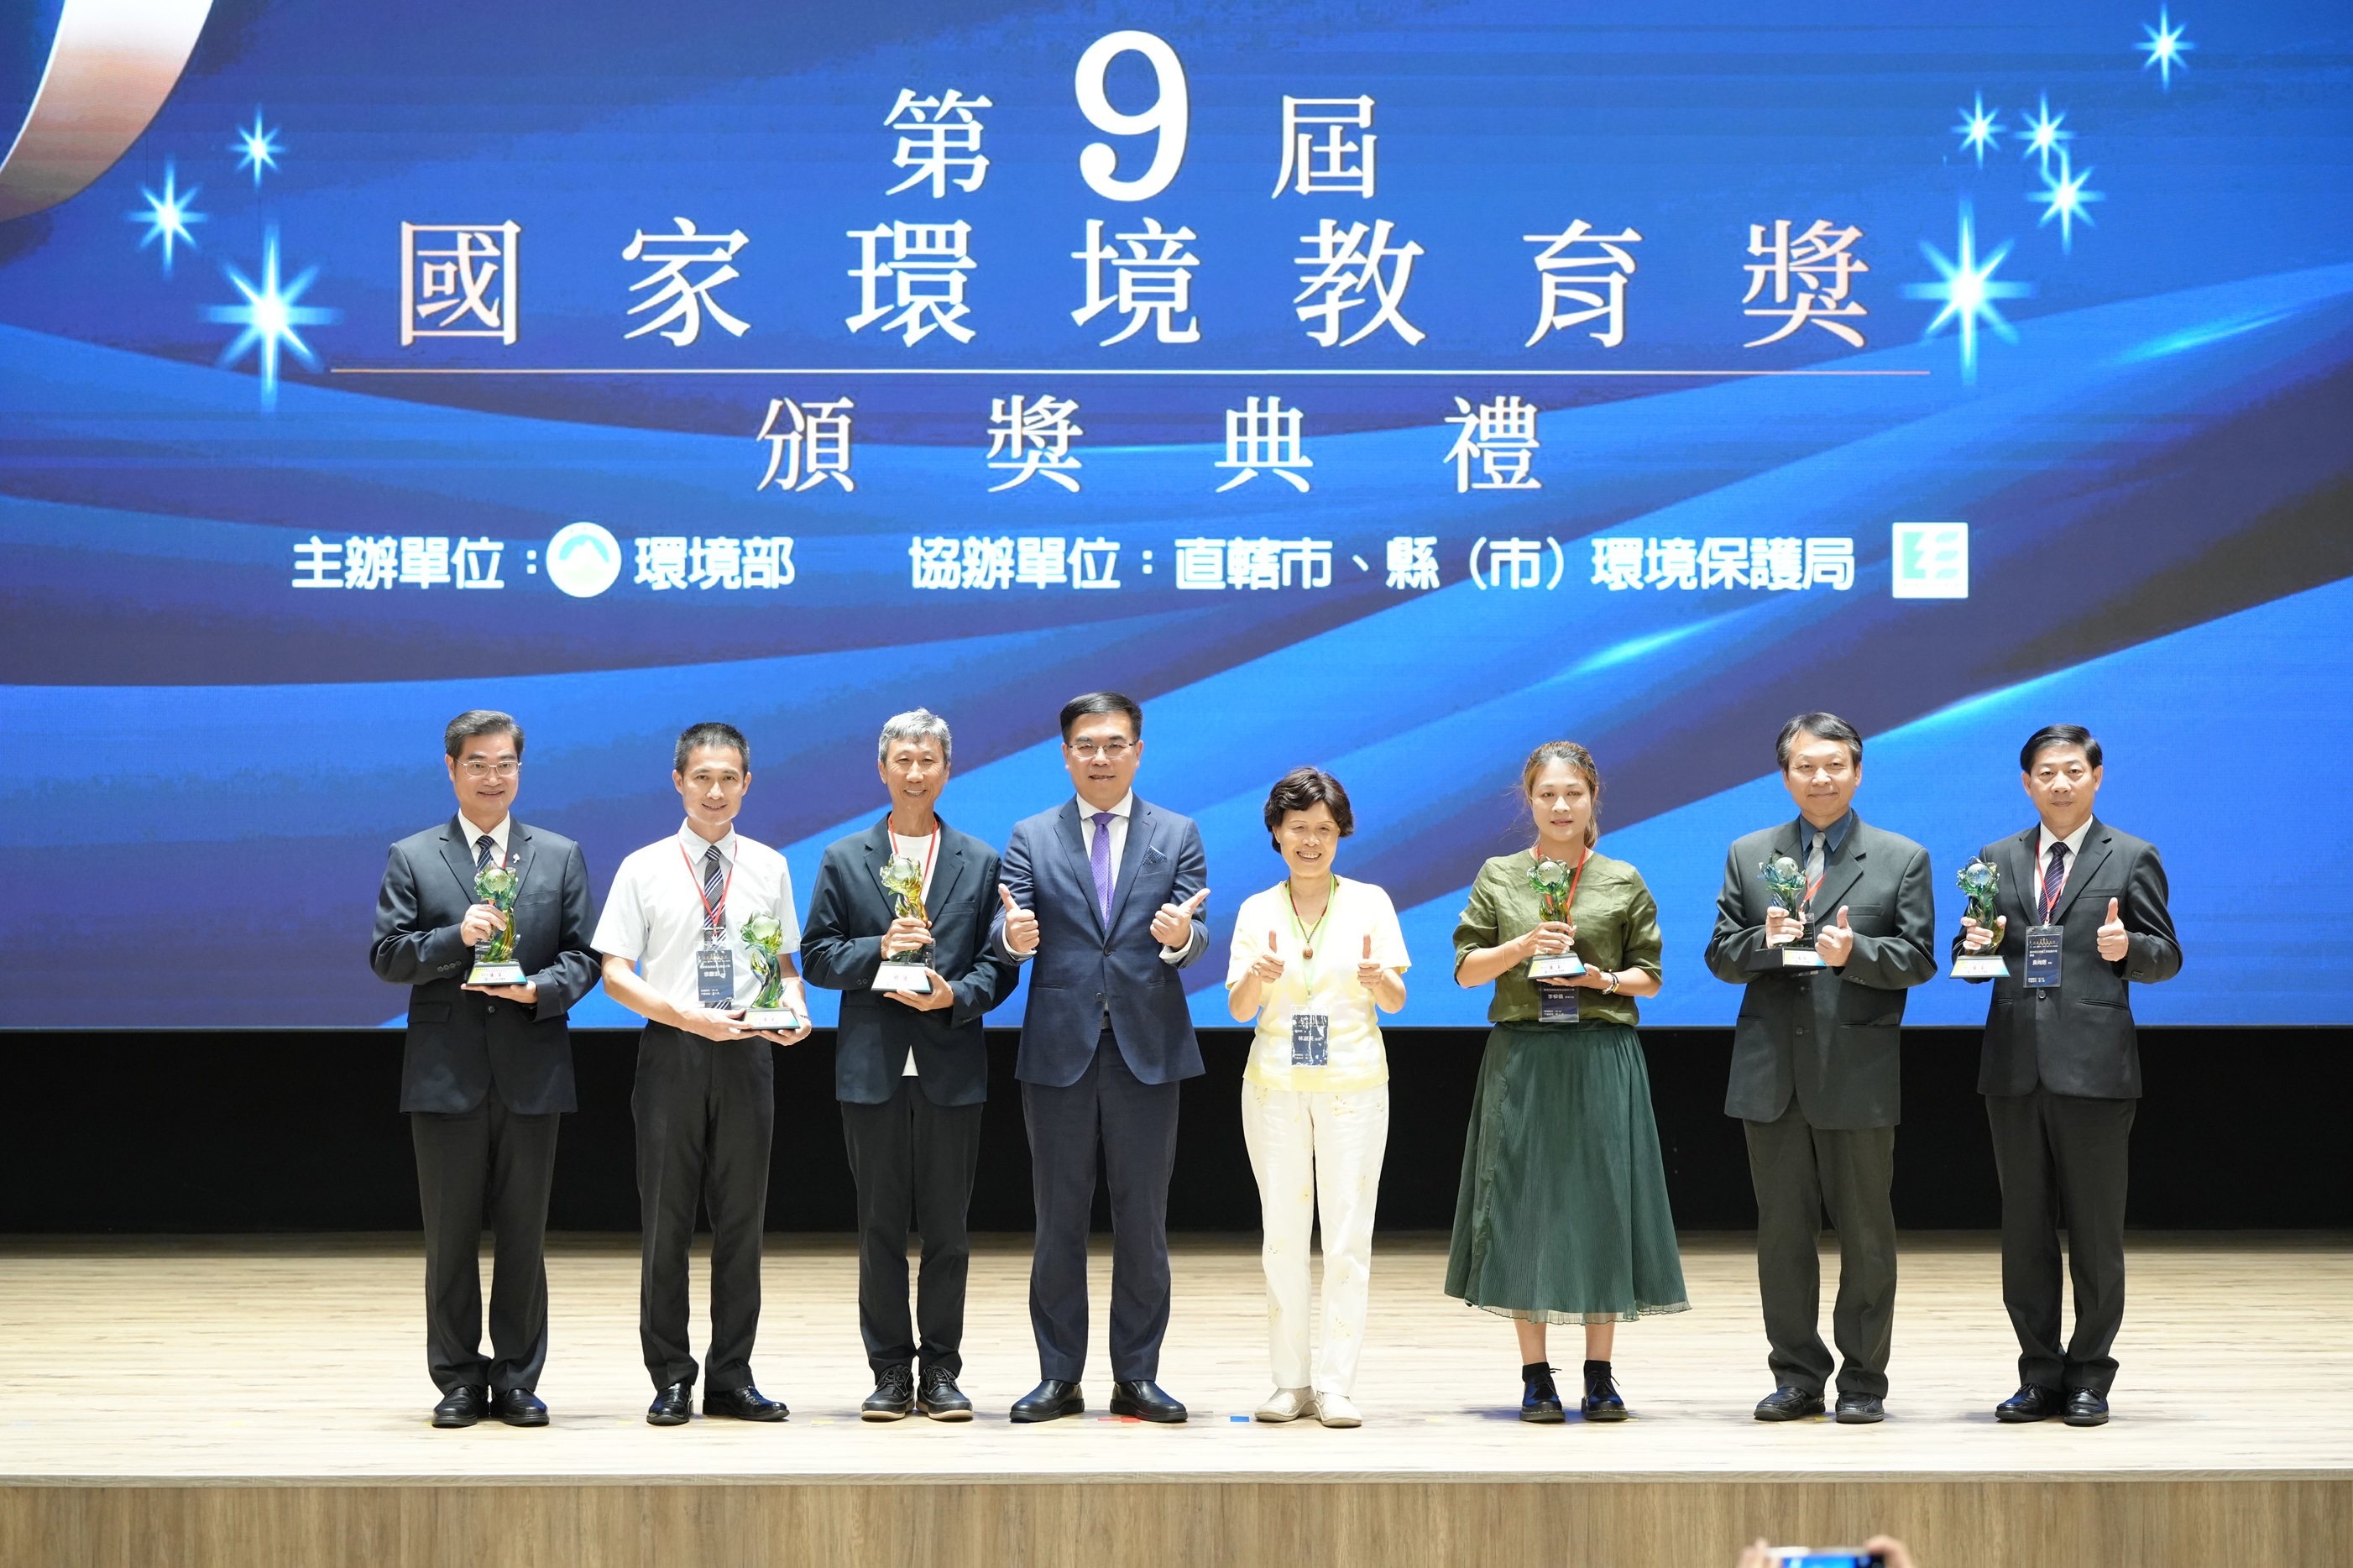 環境部部長彭啟明頒發第9屆國家環境教育獎。(環境部提供)